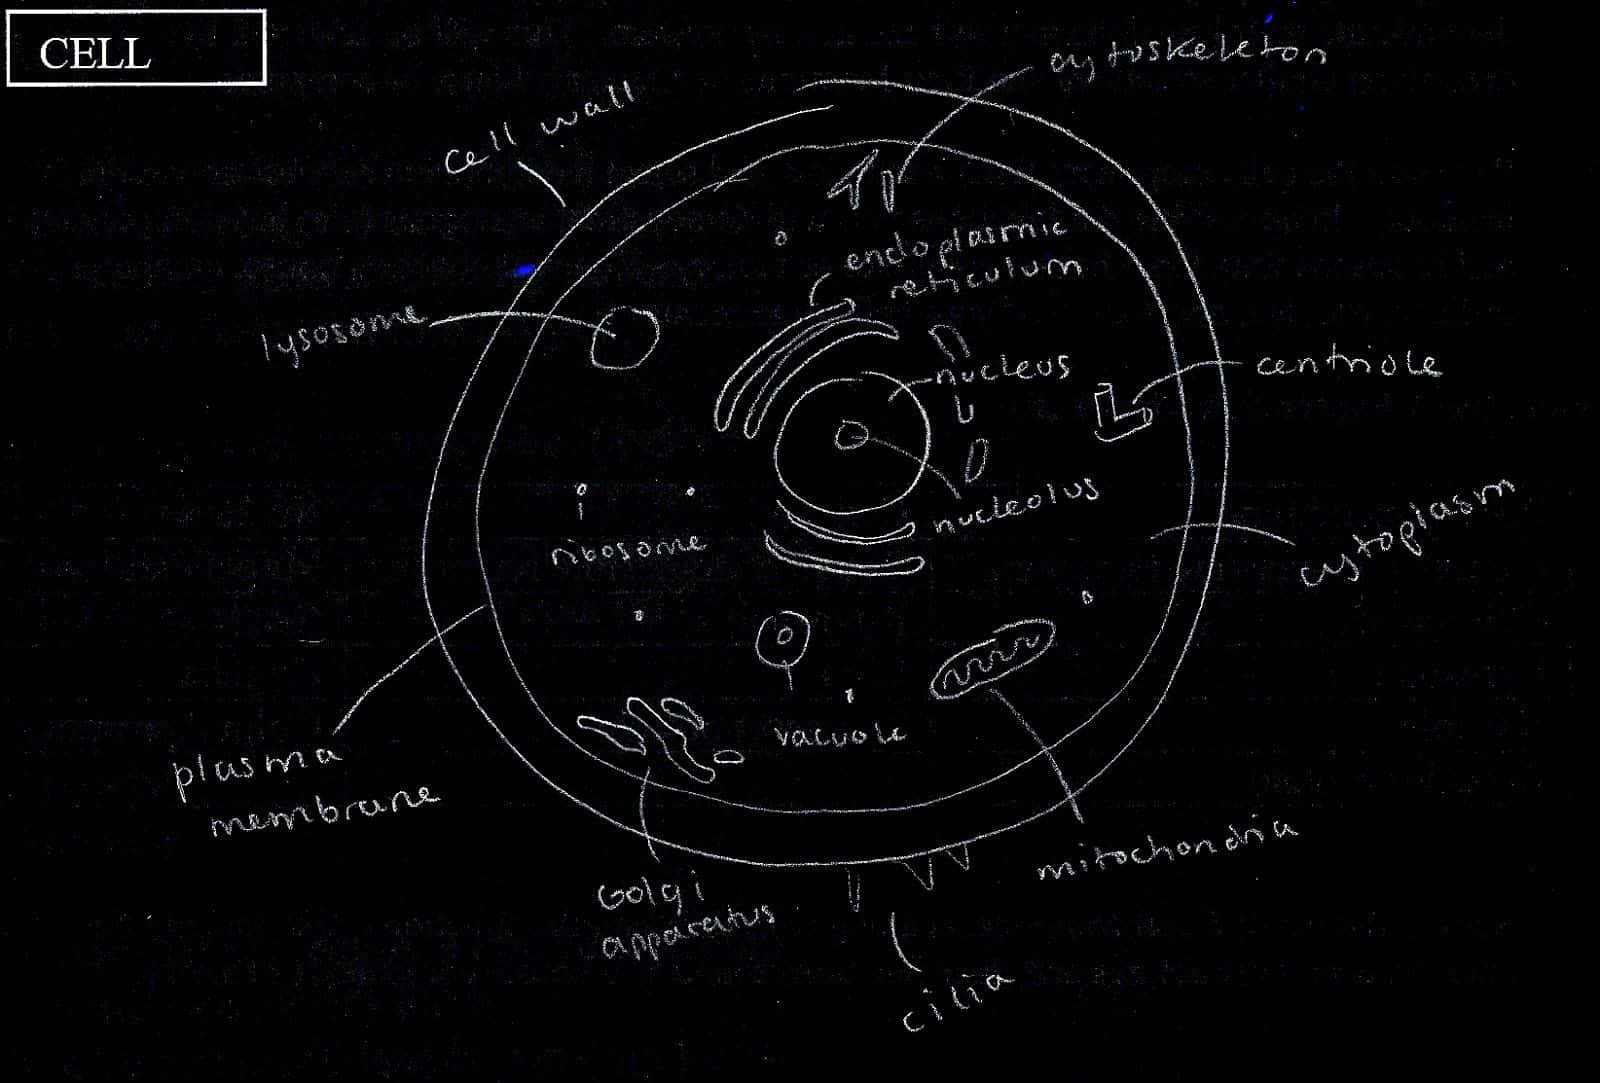 Cellulacon Diagramma E Etichette - Immagine Di Biologia